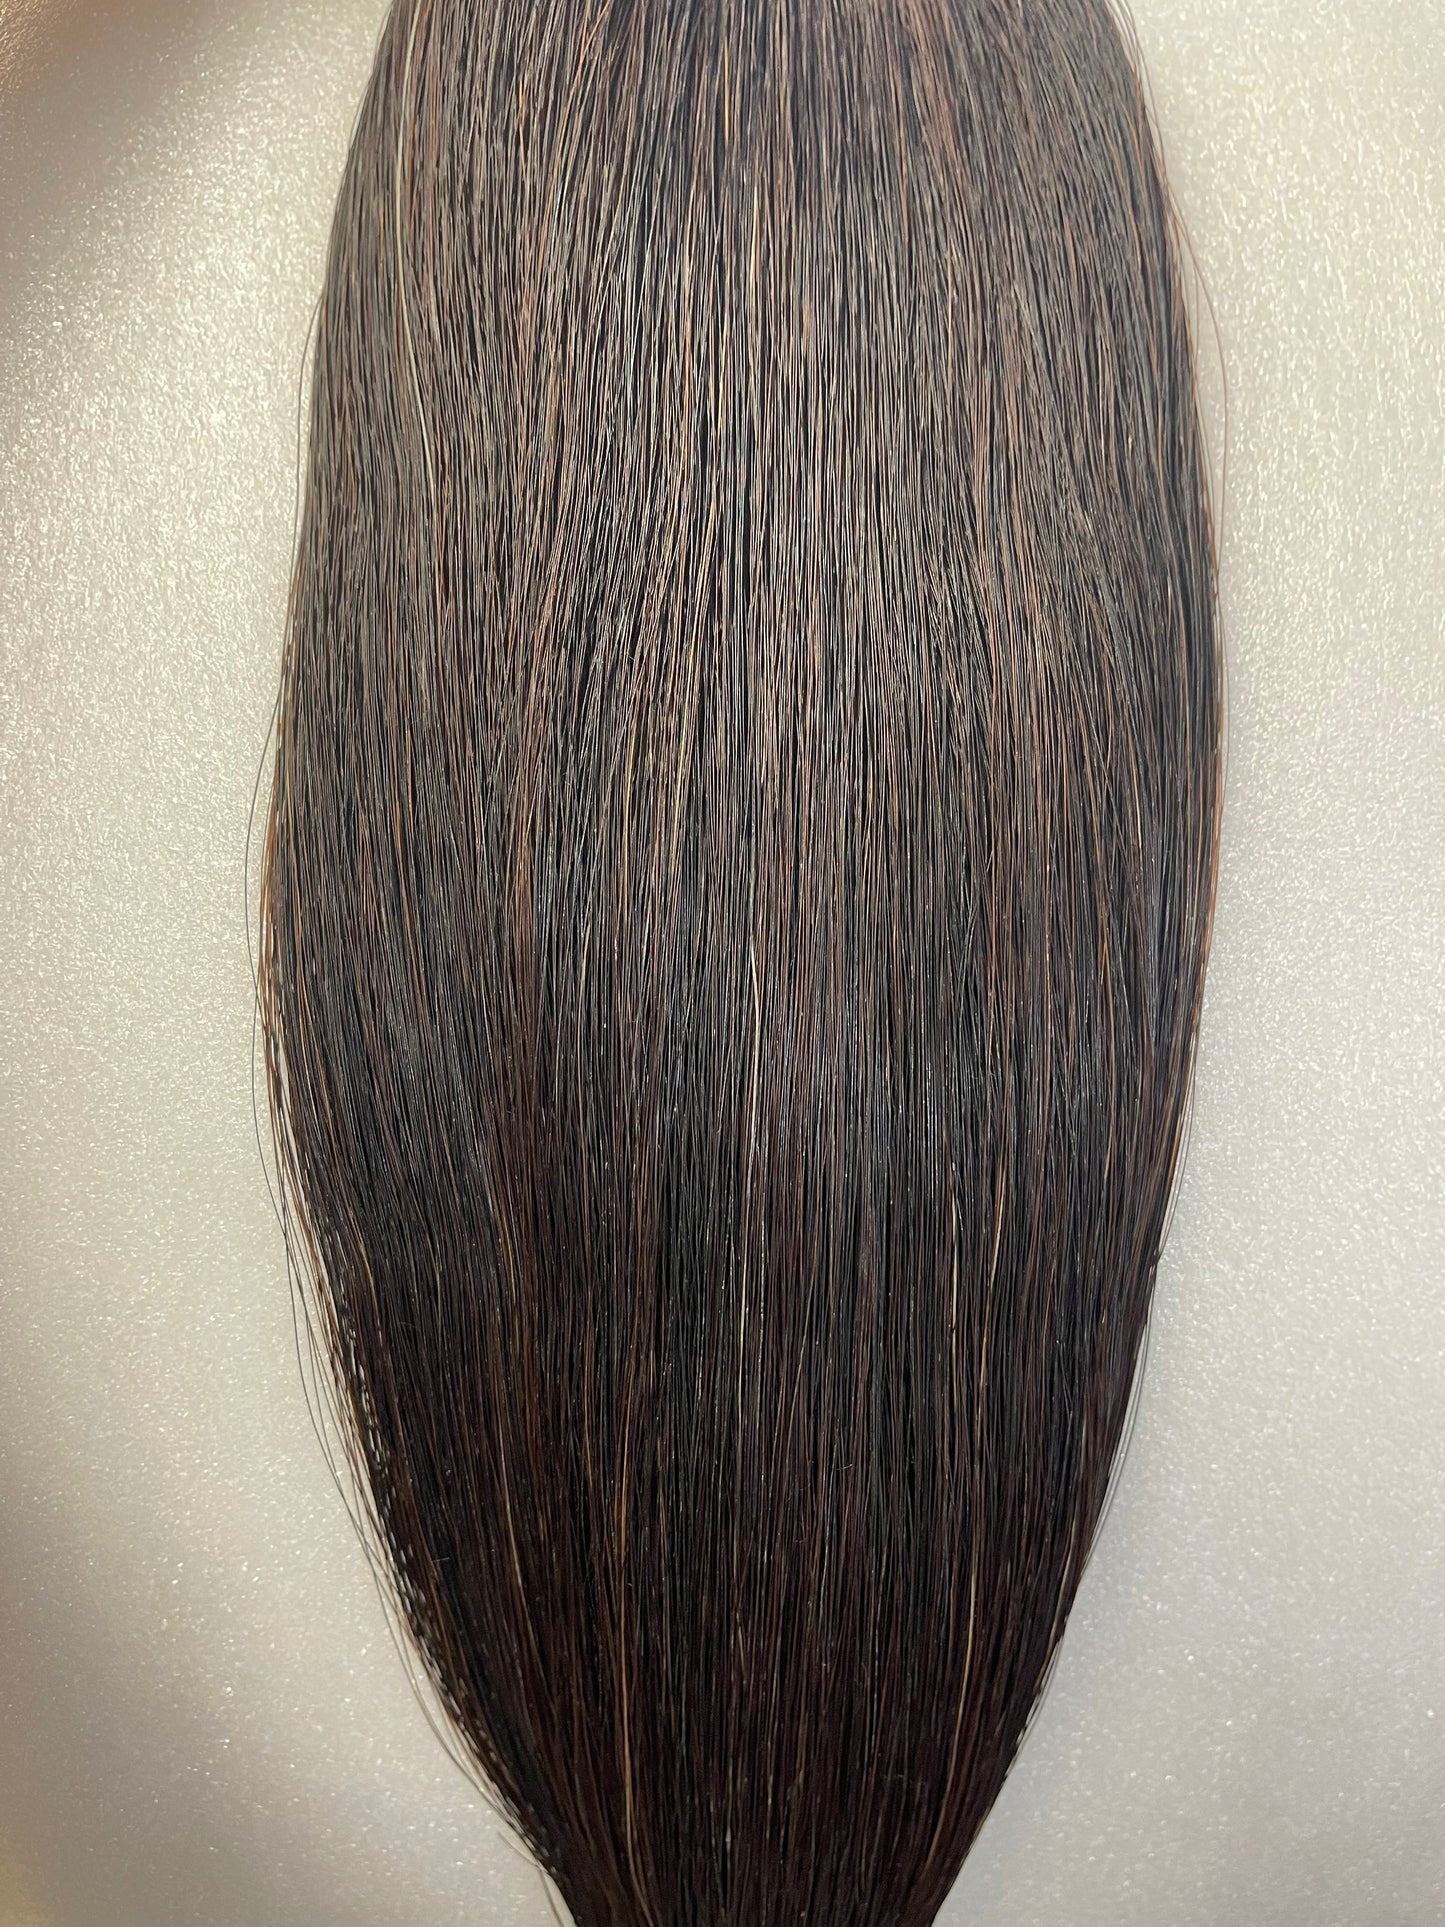 Black/Brown Horse Tail Hair